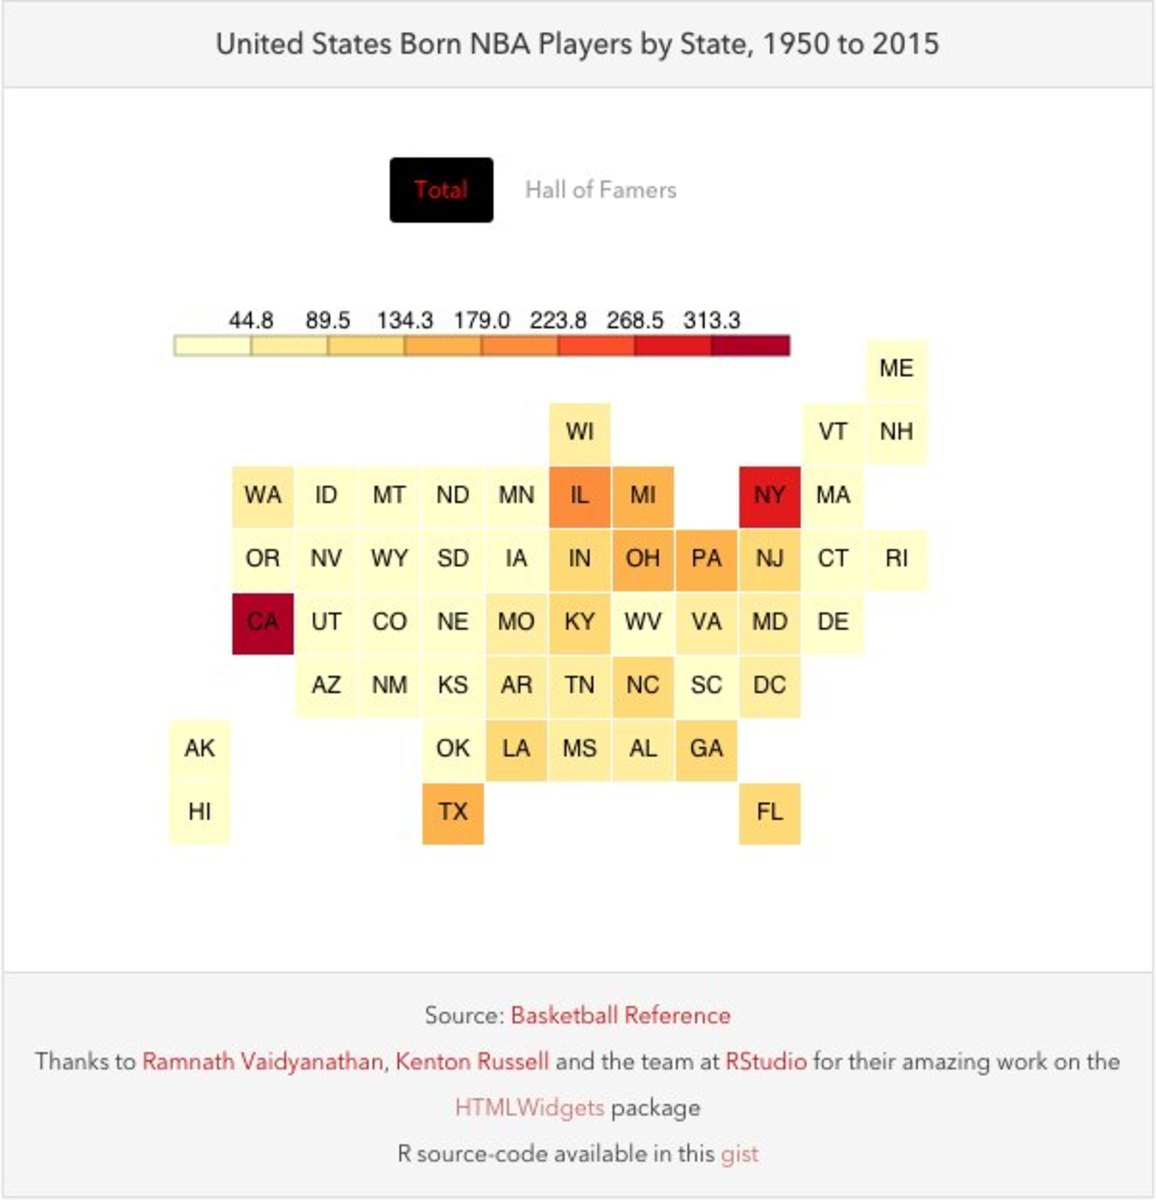 NBA-player-birthplace-data-visualization.jpg